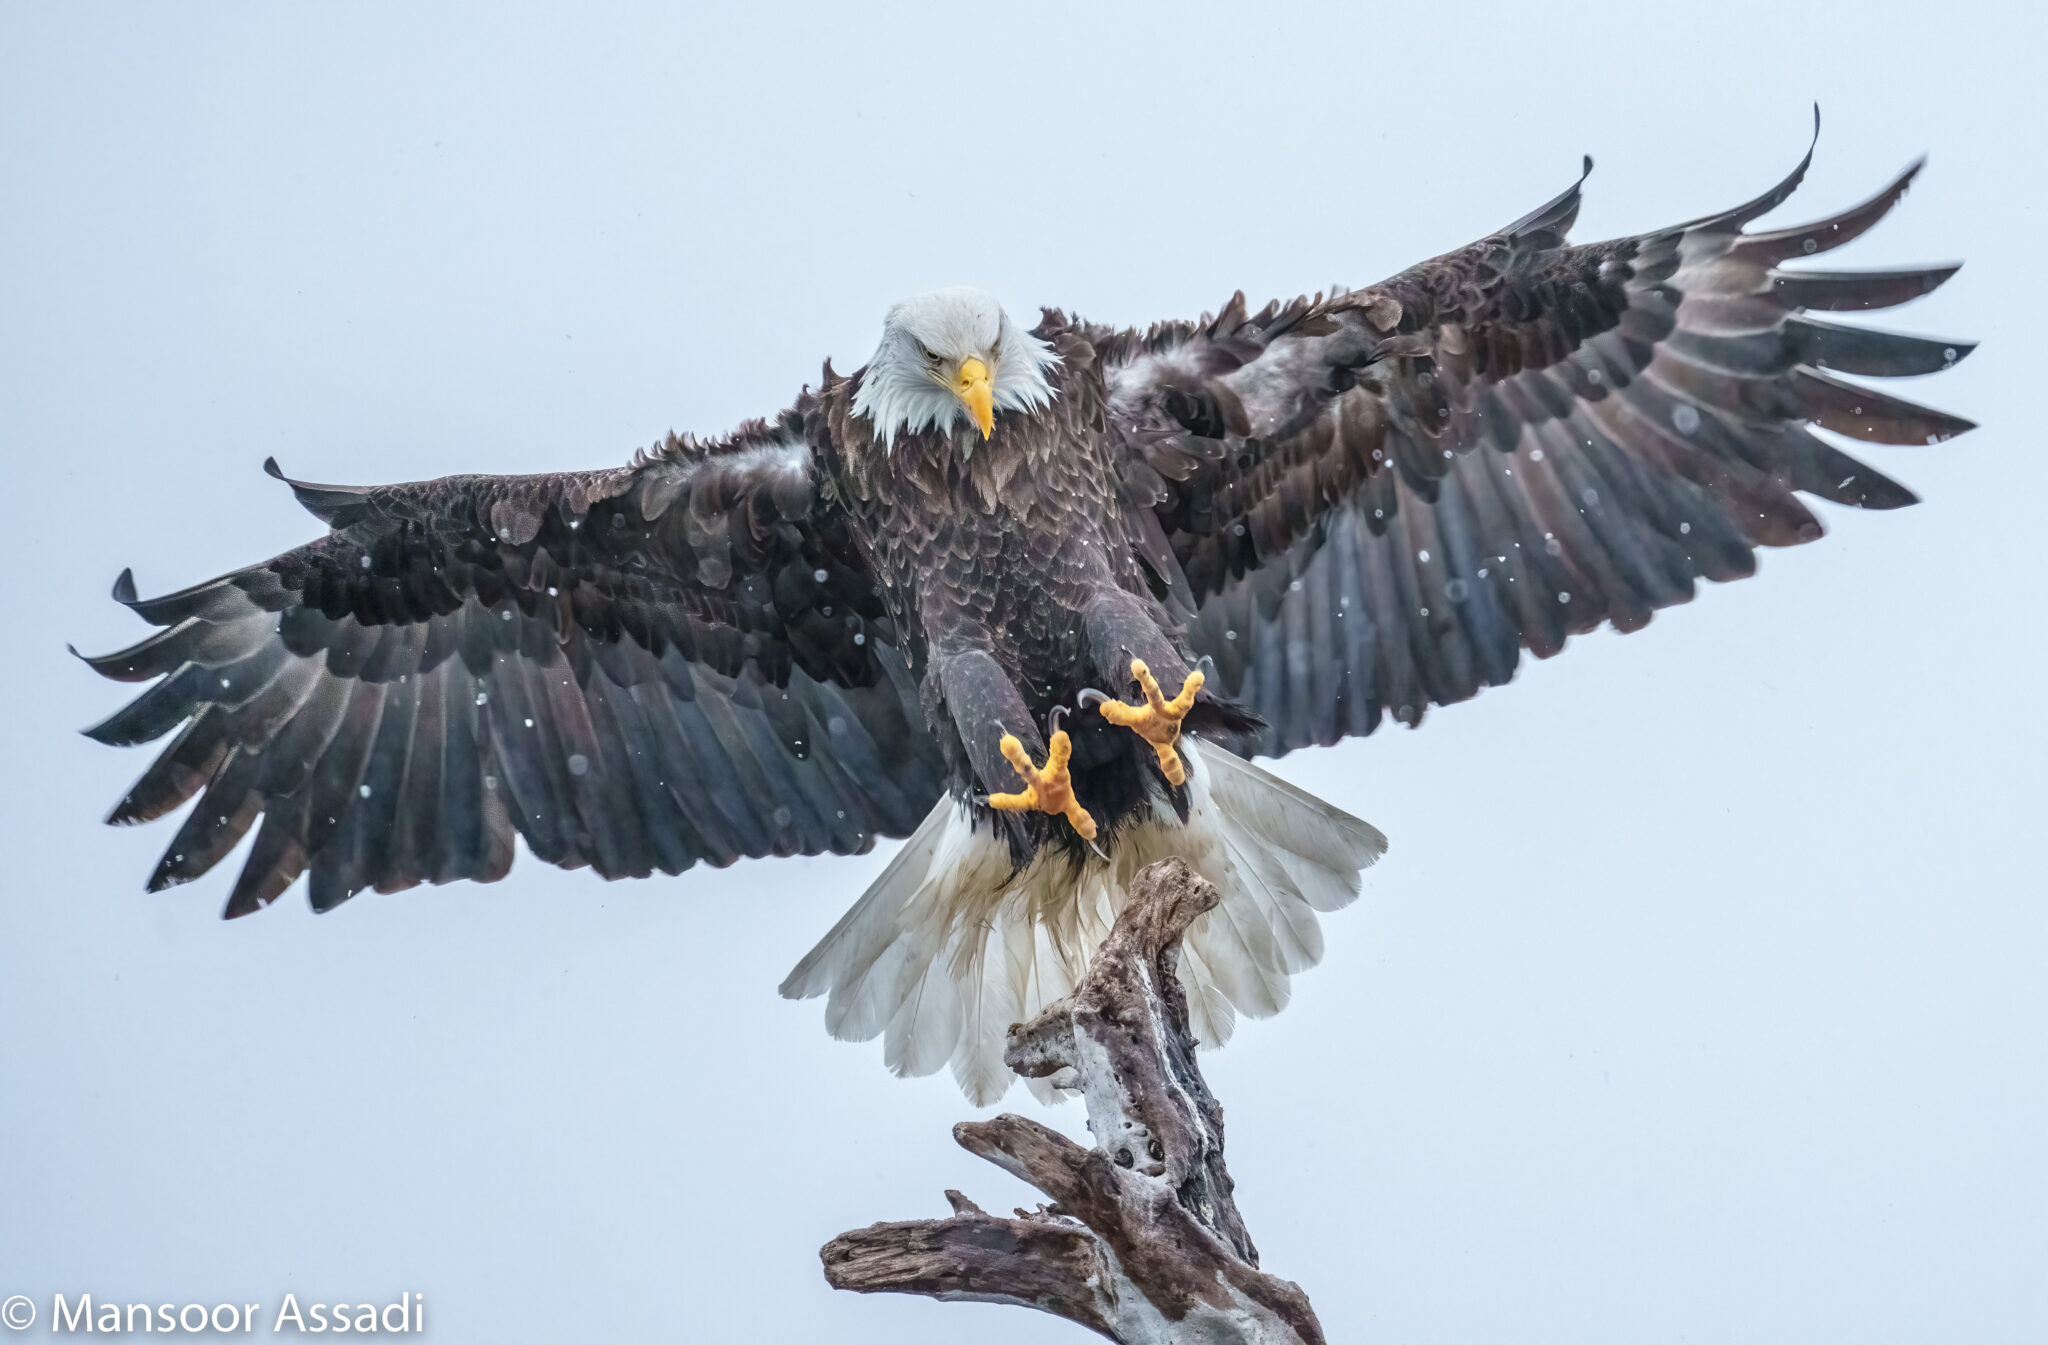 The Eagle Landing